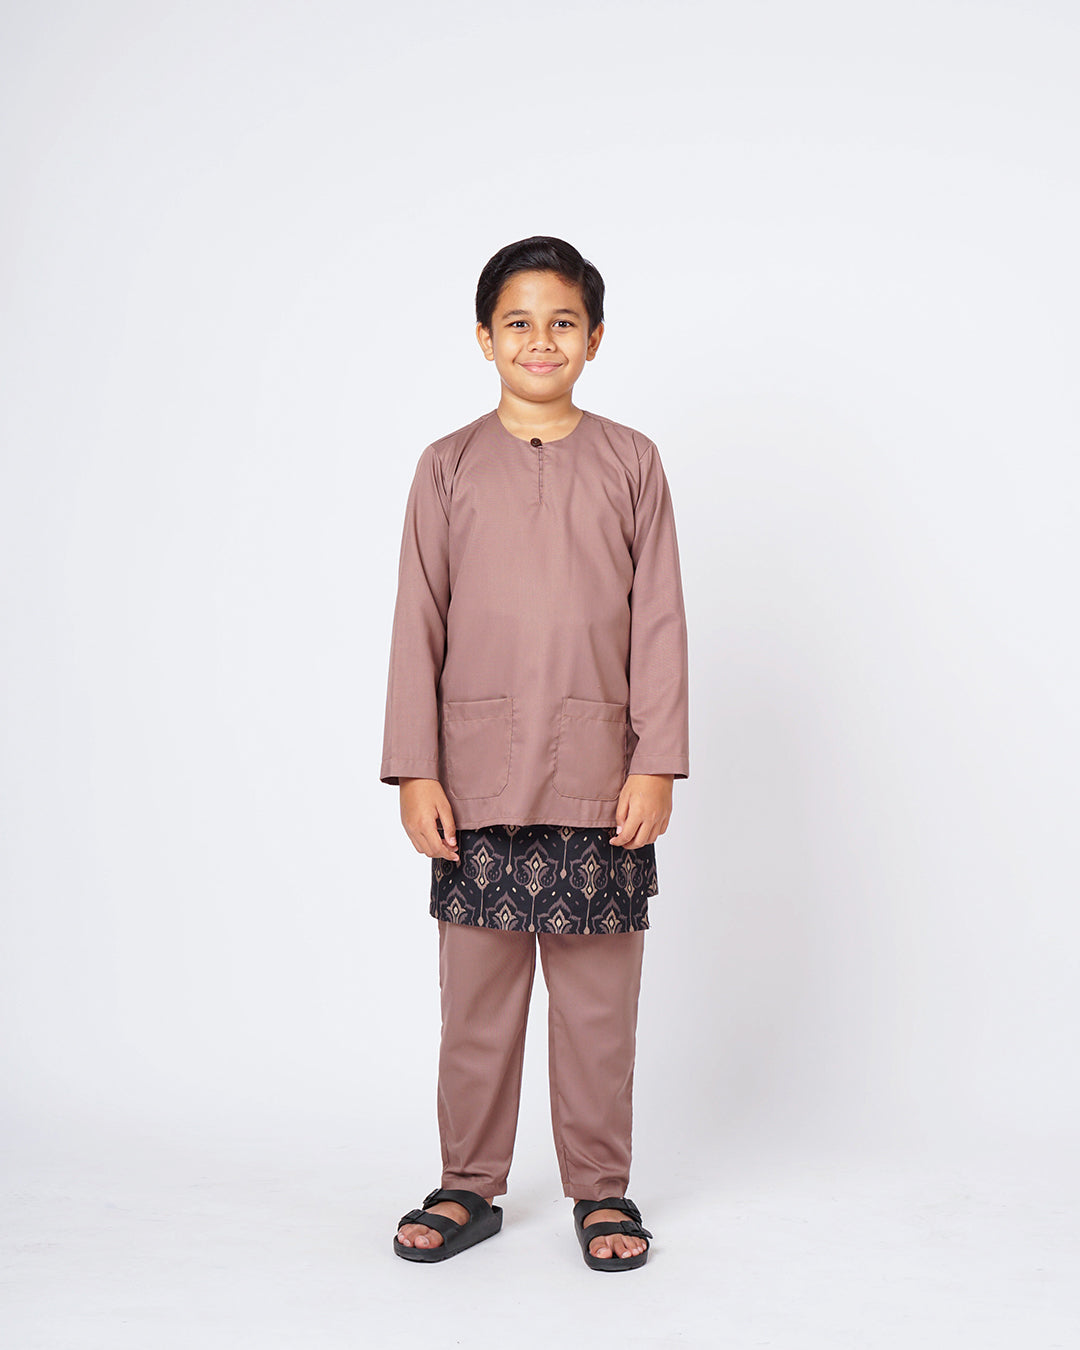 Bangsawan Baju Melayu Set Kids - BROWN